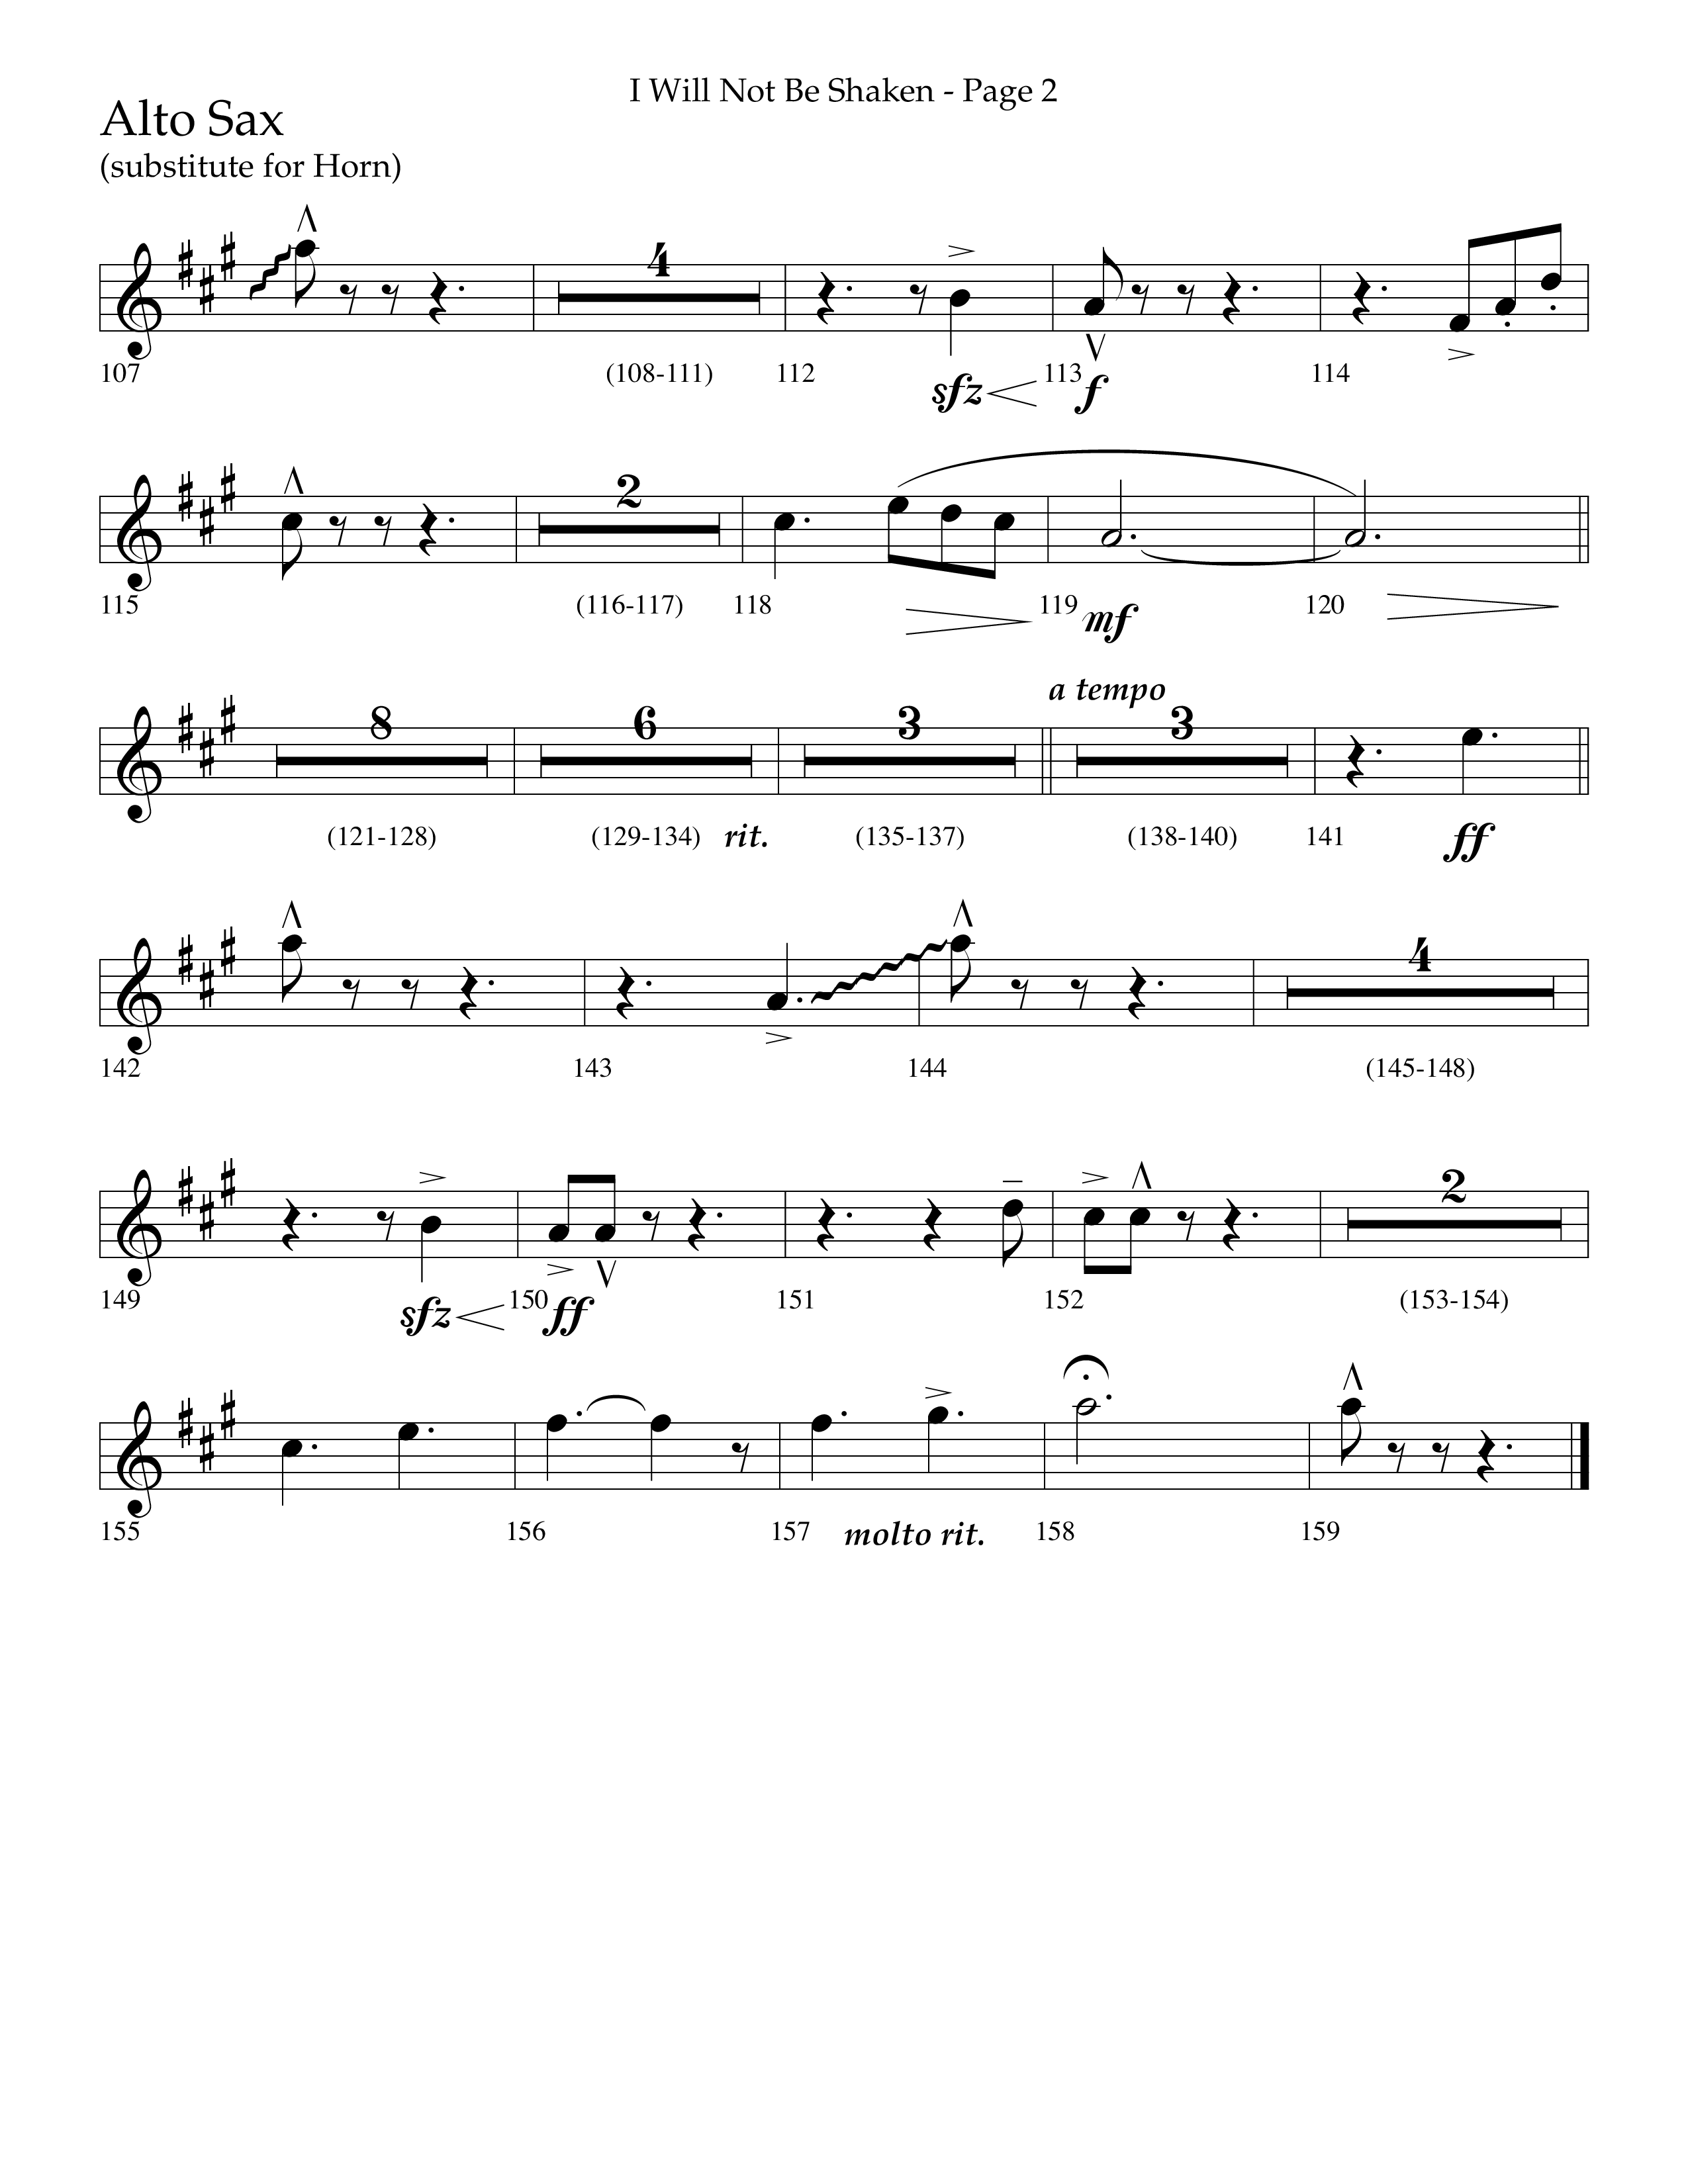 I Will Not Be Shaken (Choral Anthem SATB) Alto Sax (Lifeway Choral / Arr. Cliff Duren)